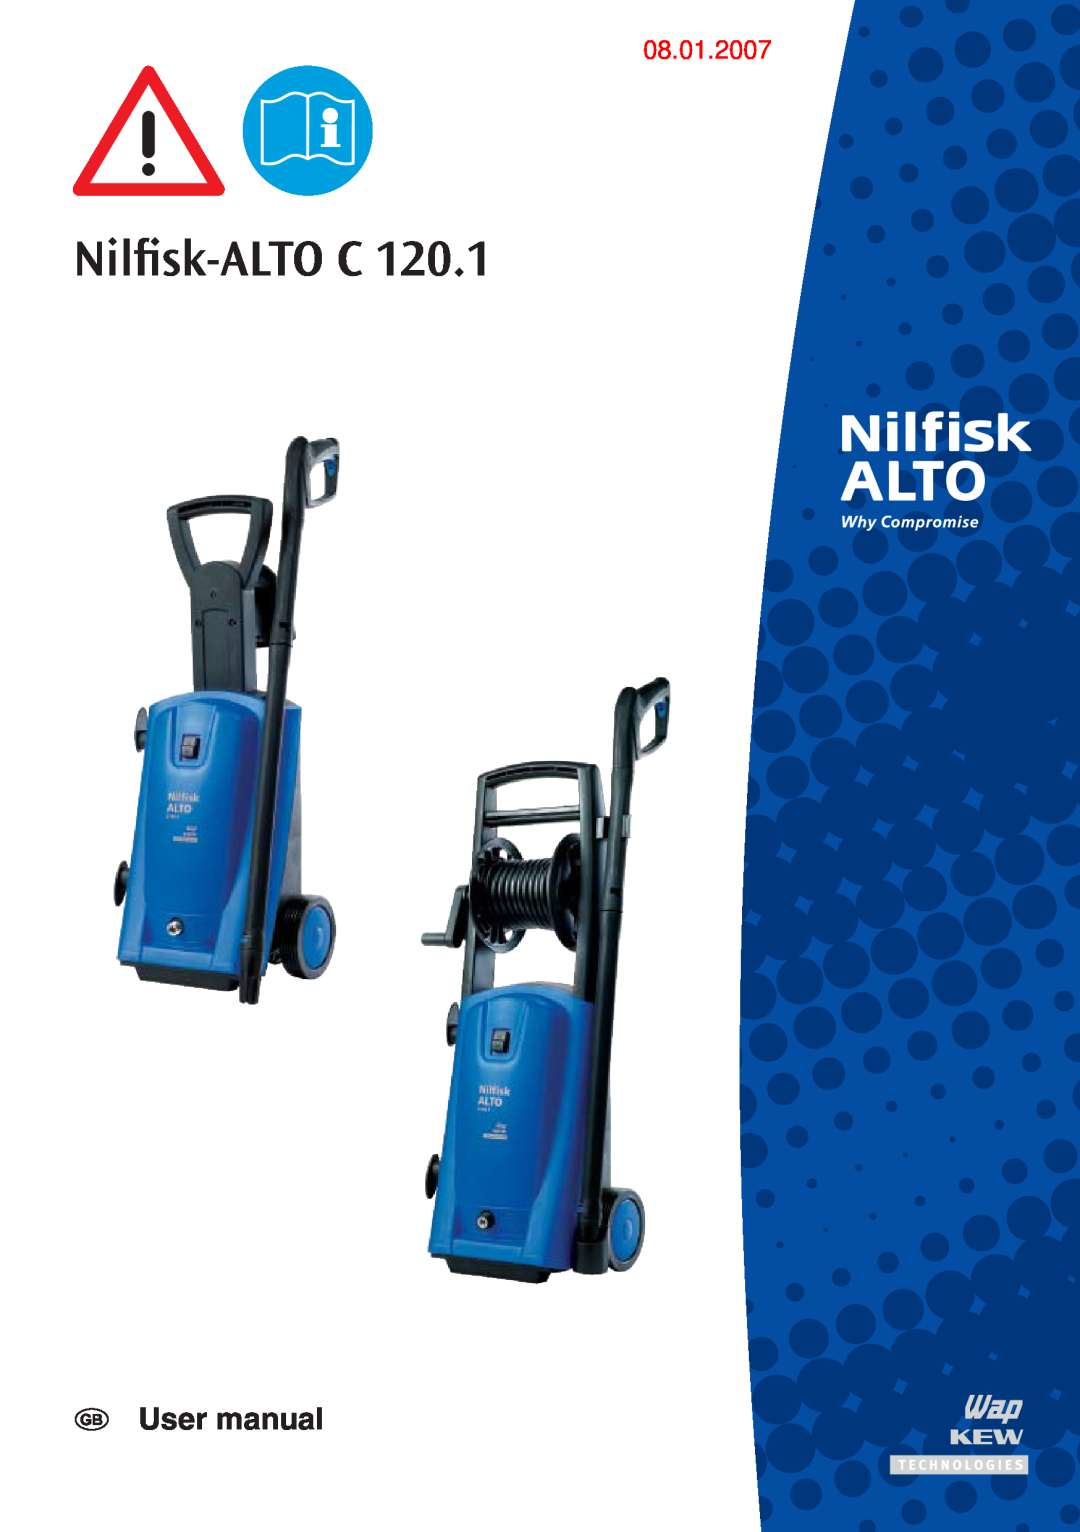 Nilfisk-ALTO C 120.1 user manual Nilﬁsk-ALTOC, 08.01.2007 